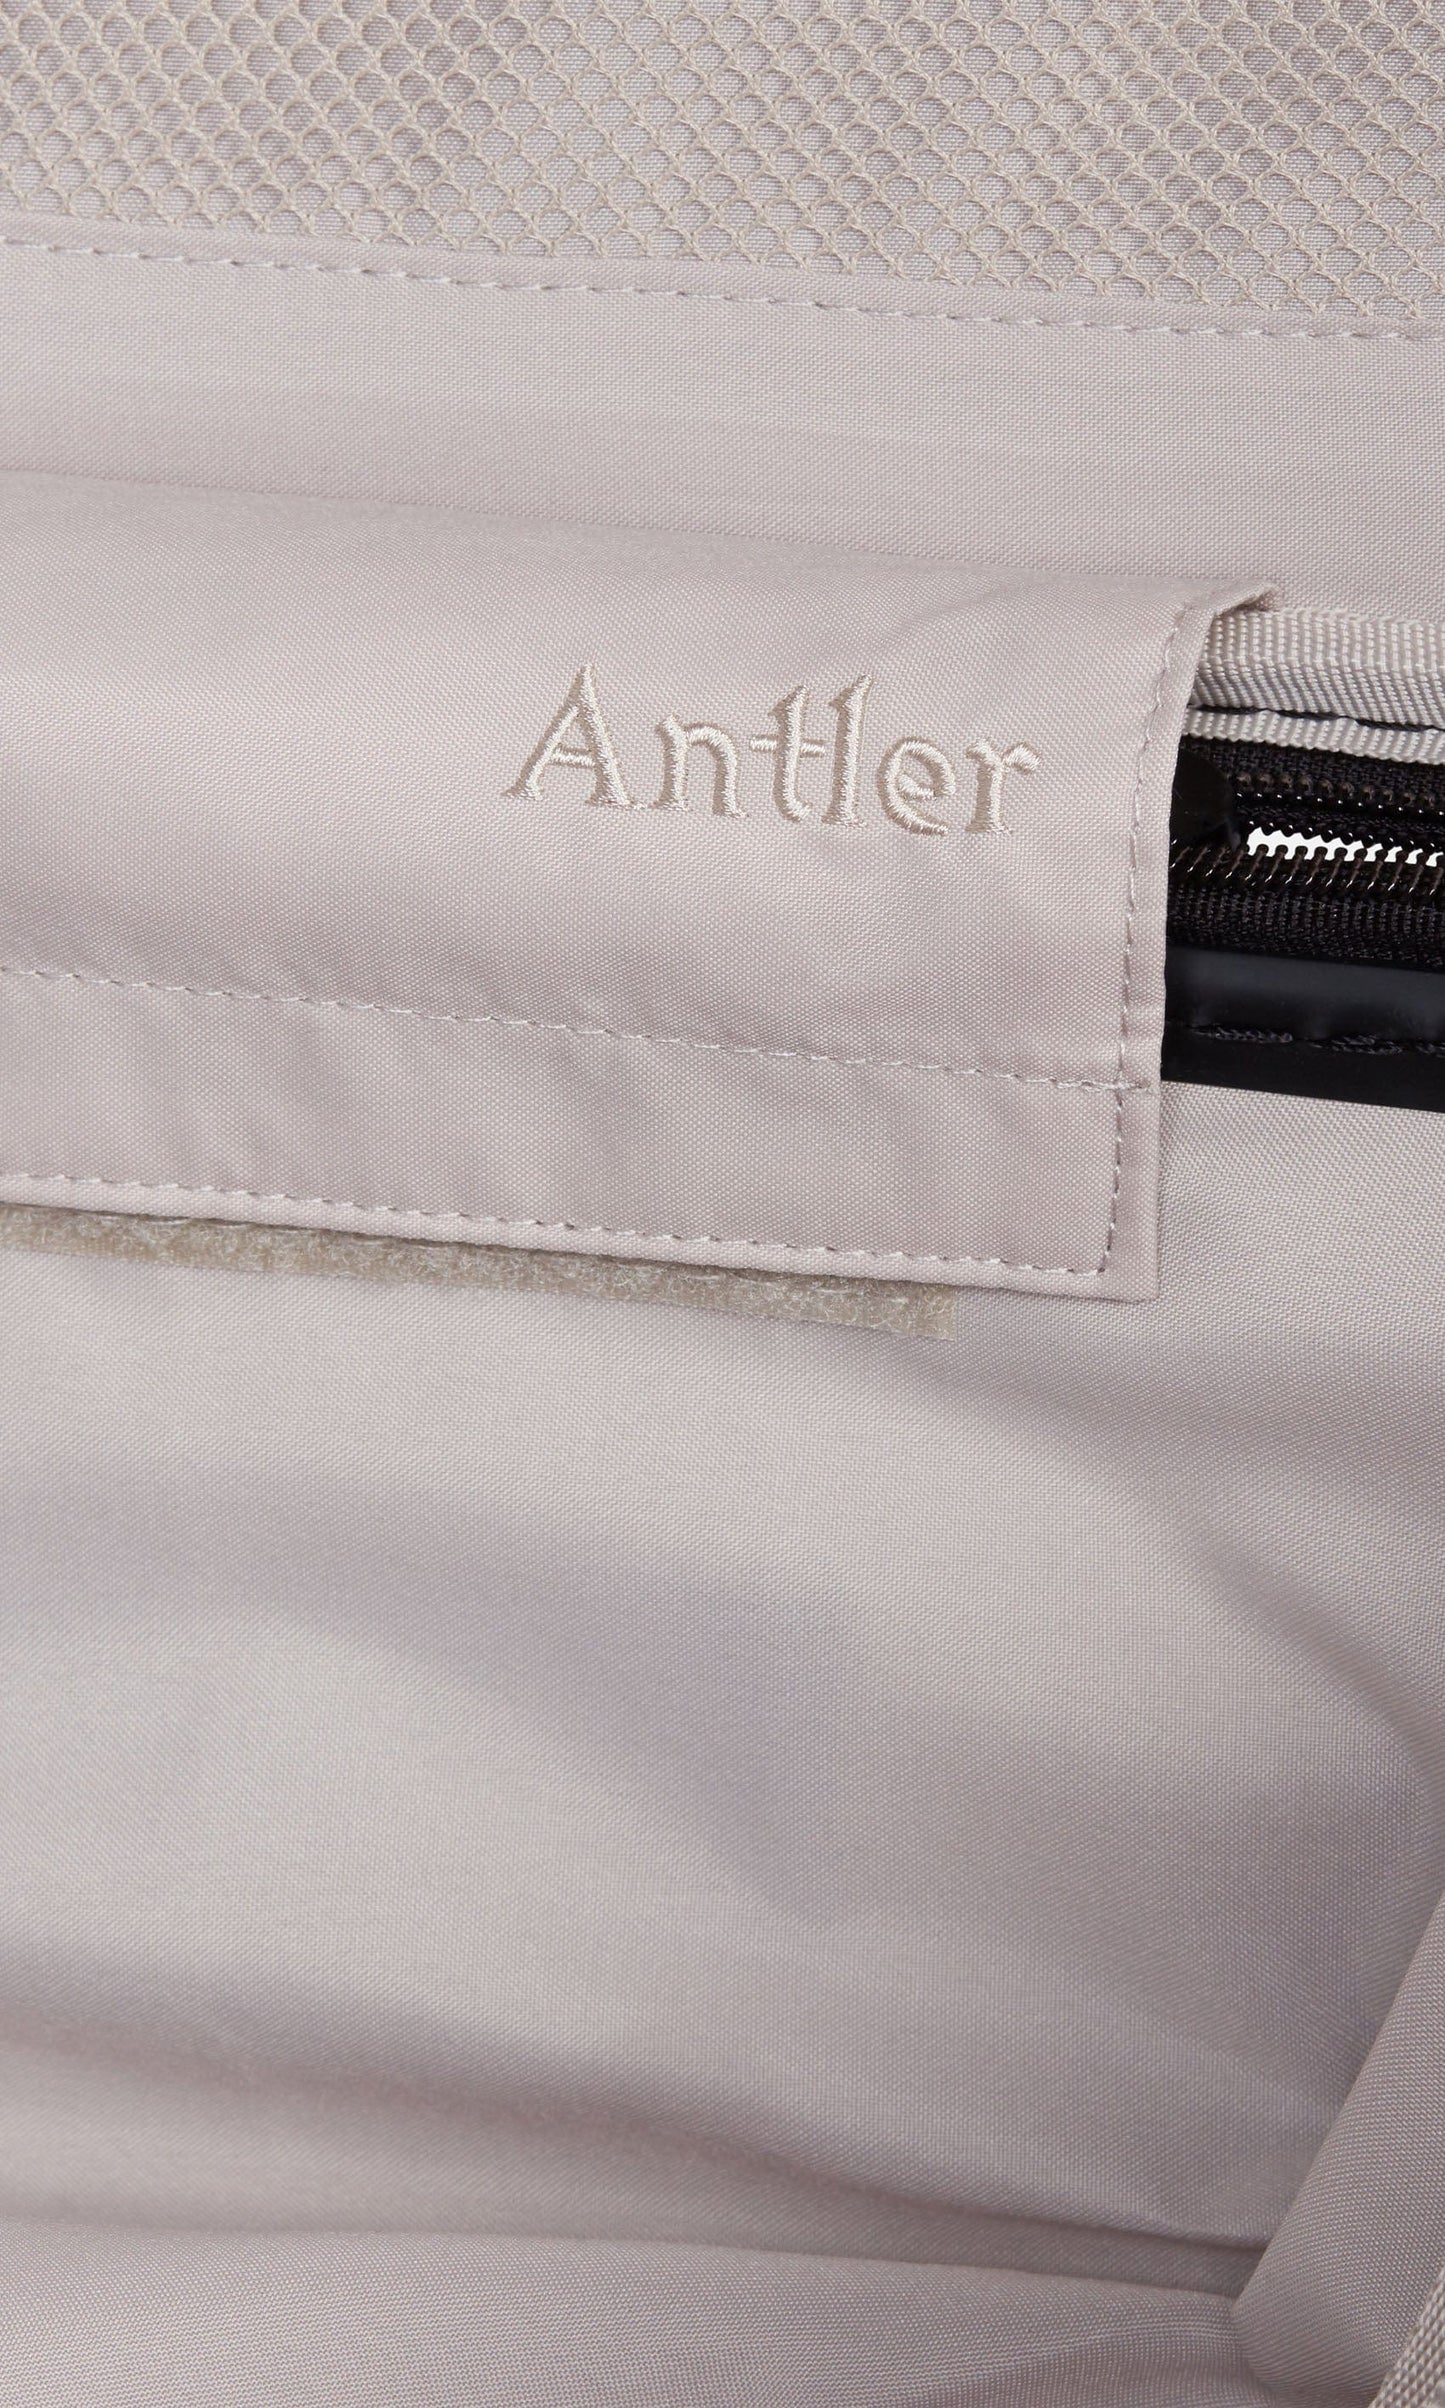 Antler Luggage -  Clifton medium in taupe - Hard Suitcases Clifton Medium Suitcase Taupe (Beige) | Hard Suitcase | Antler UK